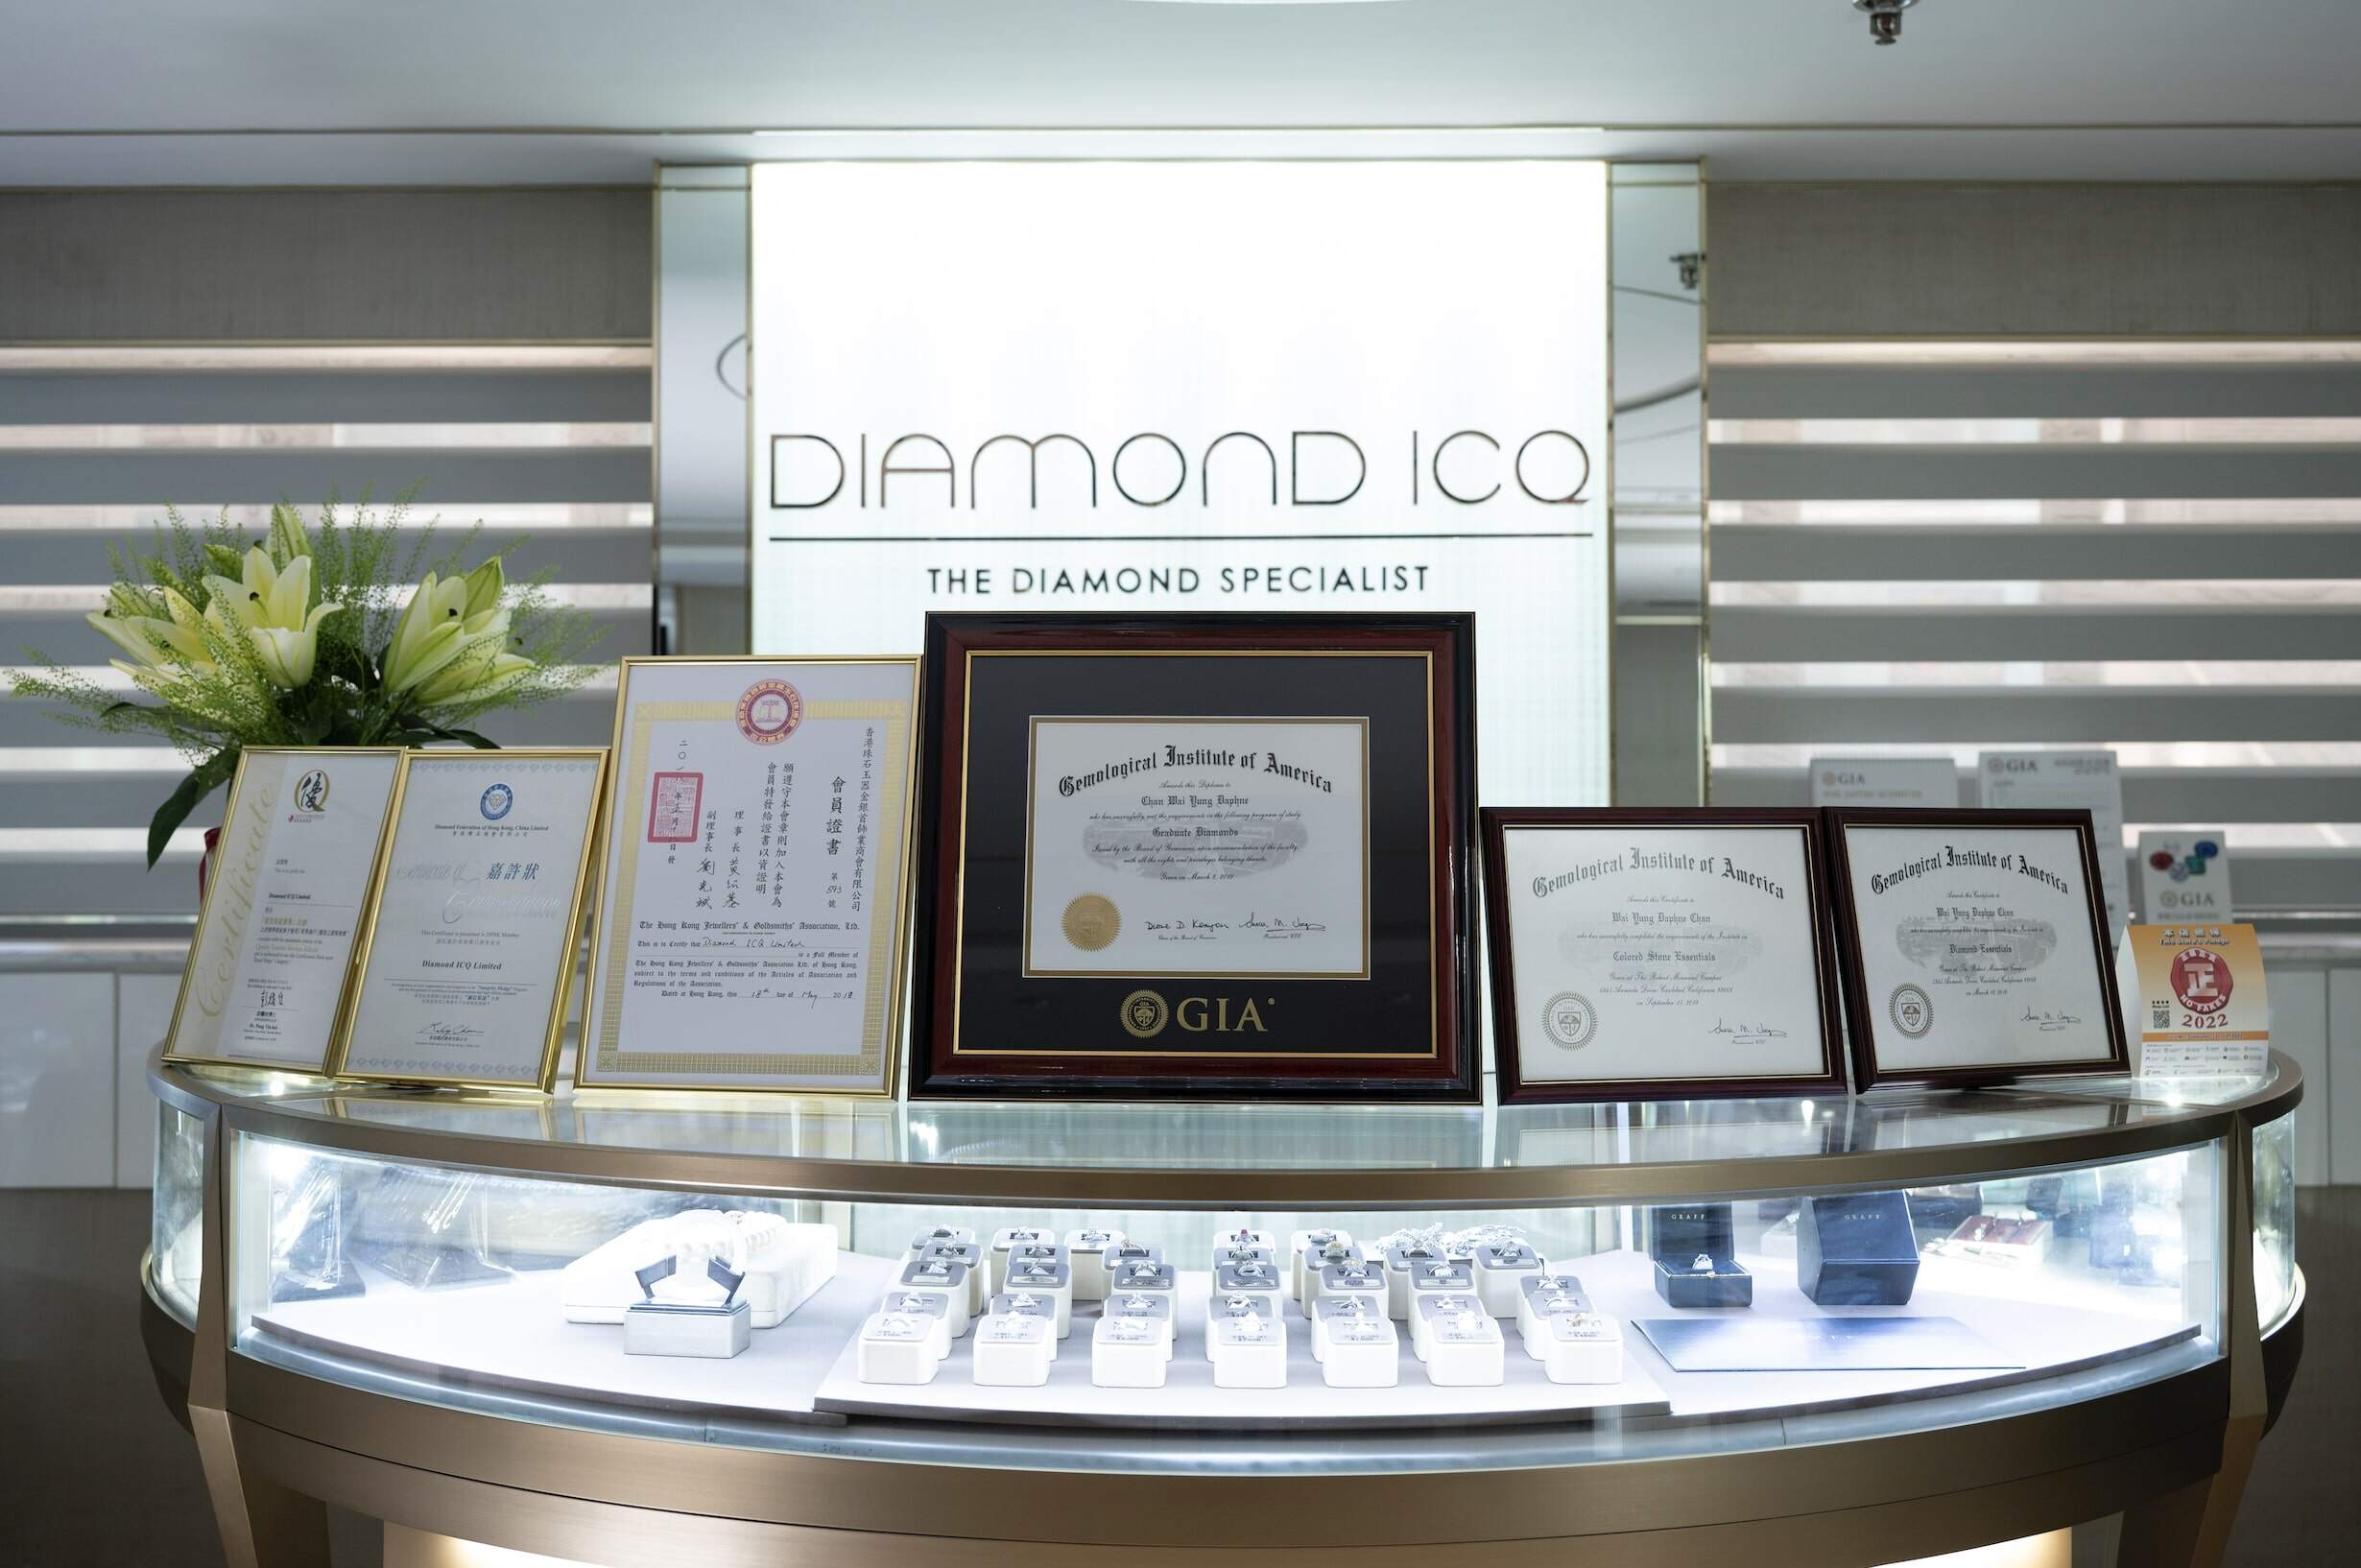 鑽石回收｜不要再割愛賣手袋了！鑽飾回收才是大勢 Diamond ICQ賣鑽石套現方便又環保♻️